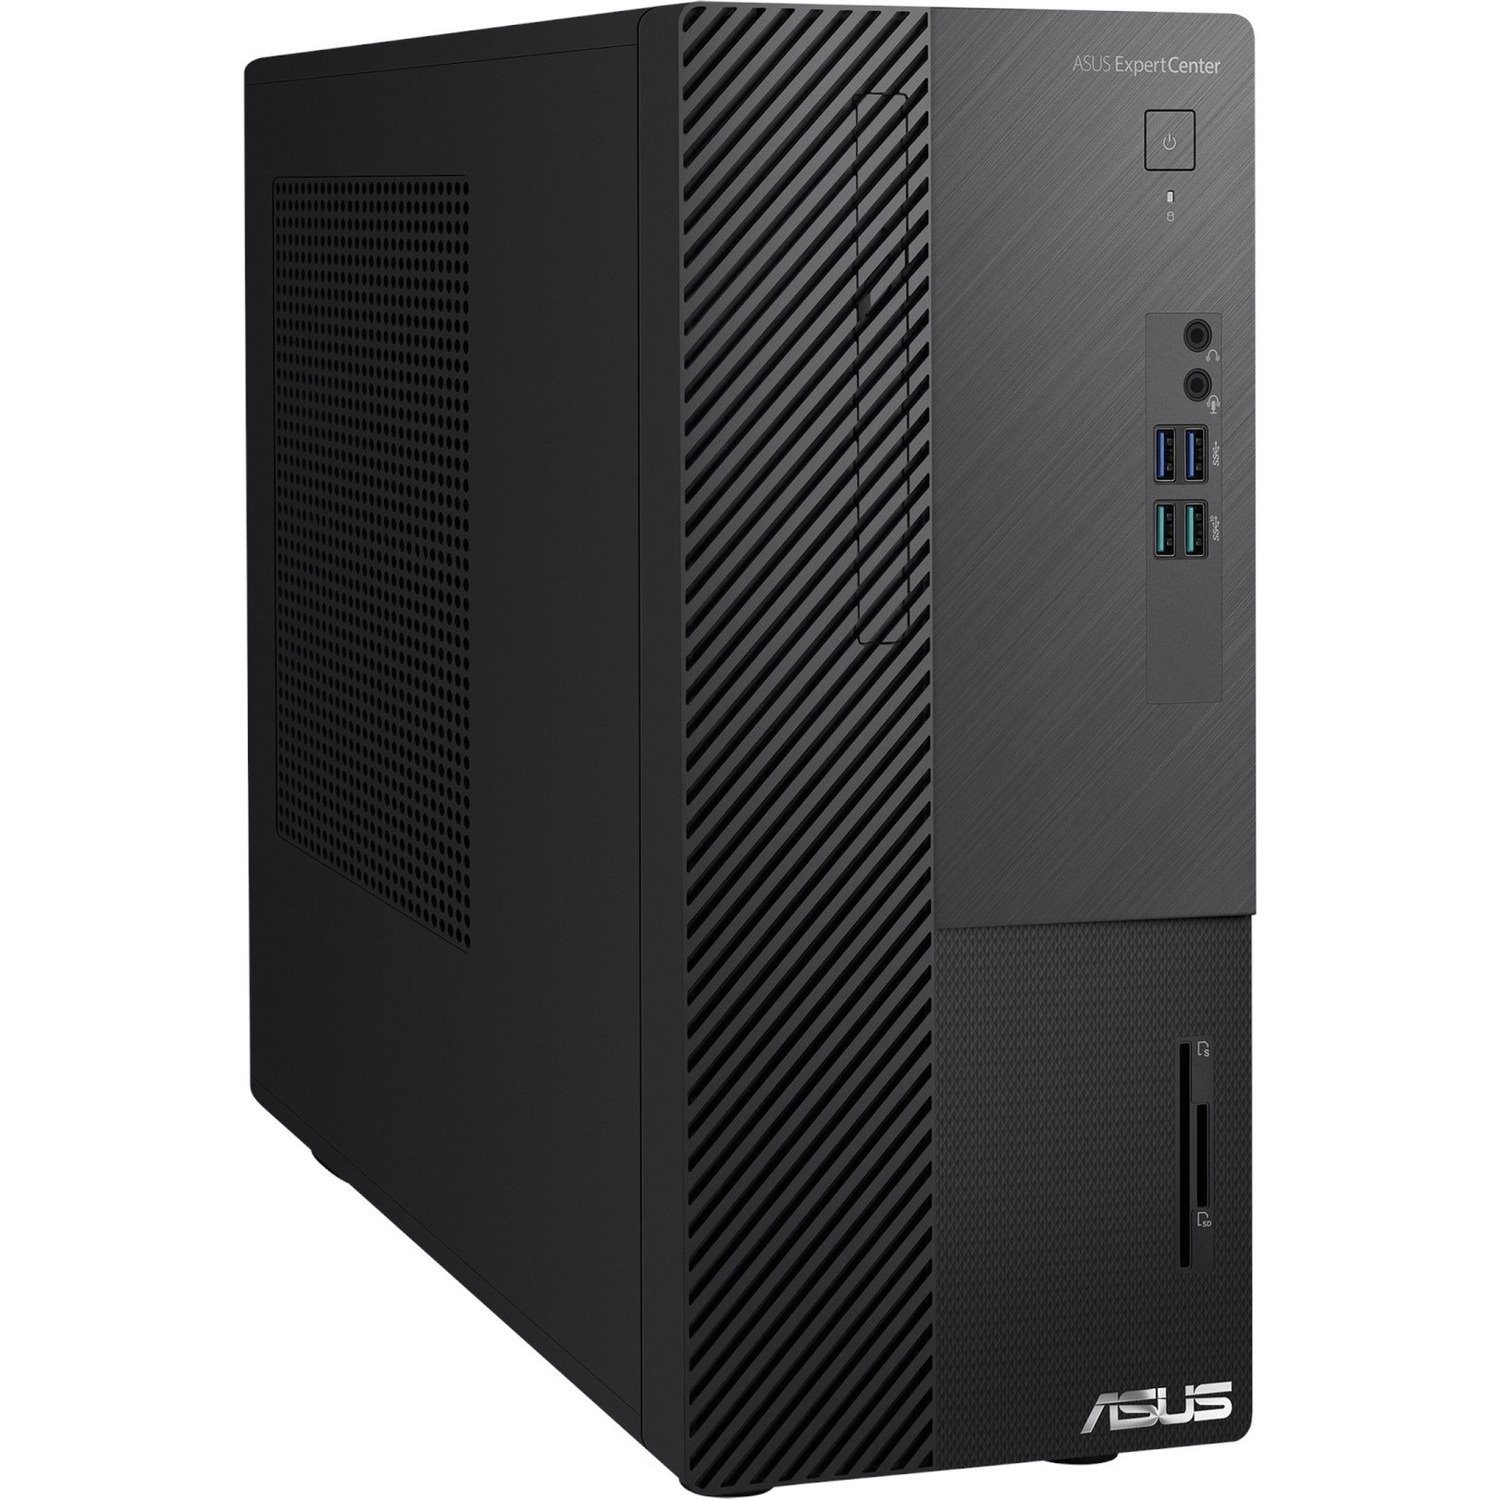 Asus ExpertCenter D5 D500MD-Q51P Desktop Computer - Intel Core i5 12th Gen i5-12500 - 8 GB - 256 GB SSD - Mini-tower - Black